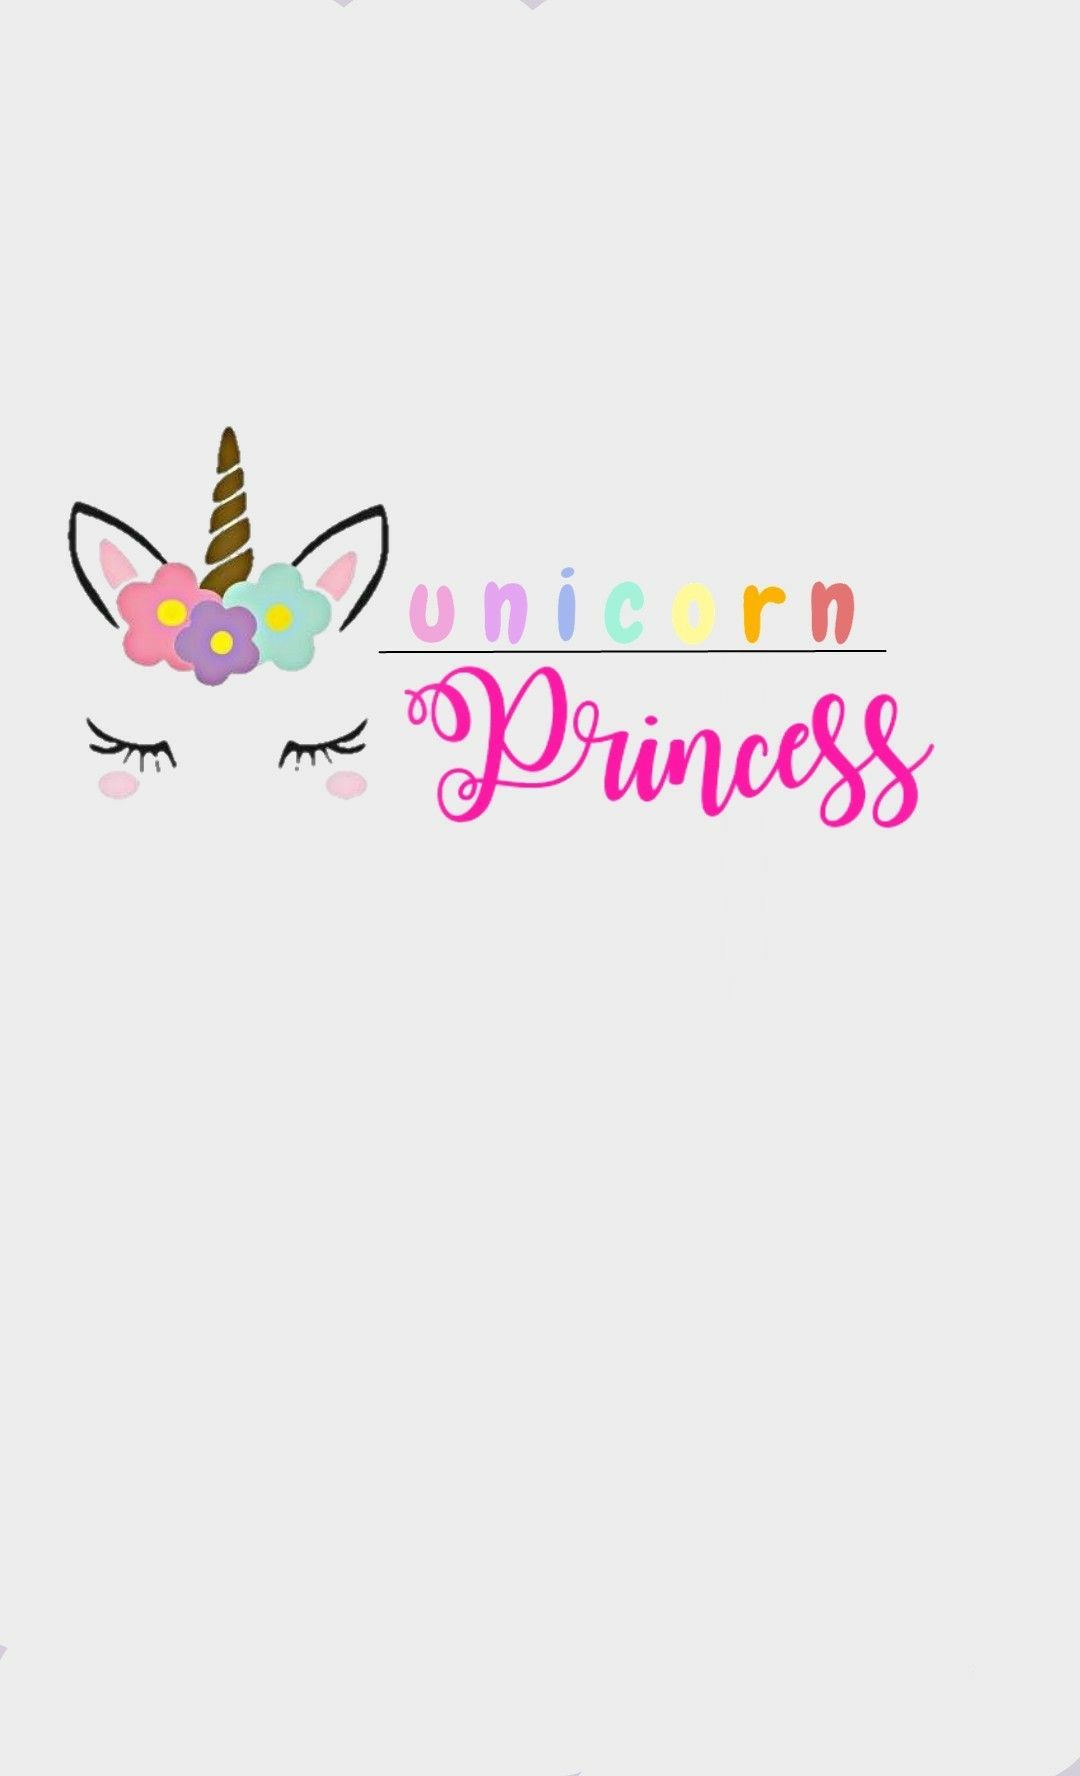 Unicorn Princess. Unicorn wallpaper, Unicorn party, Unicorn princess